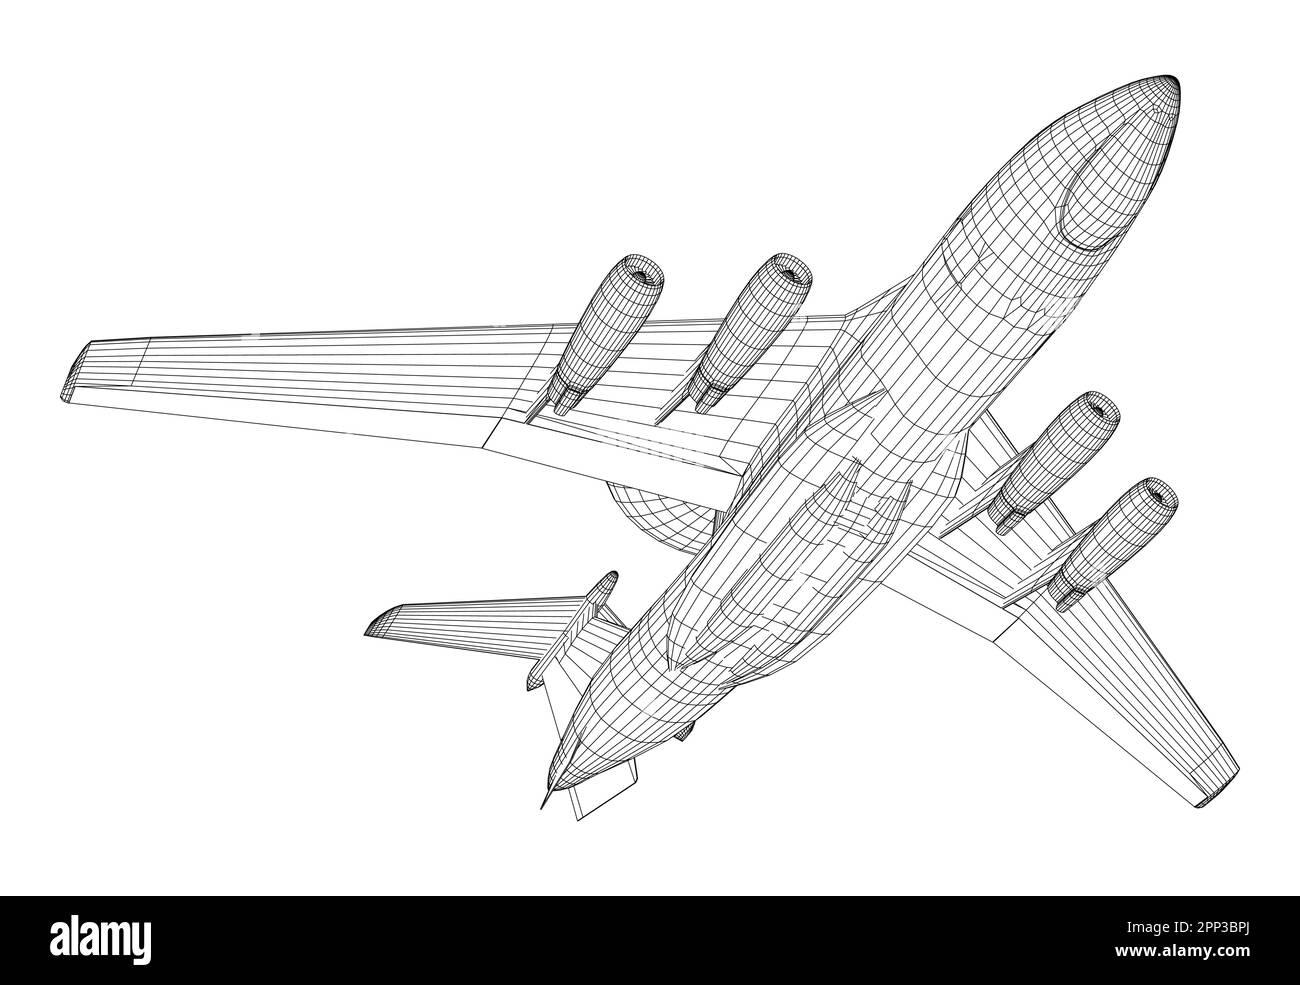 Vektorzeichnung von flugzeuggestützten Frühwarn- und Kontrollflugzeugen. Bild für Illustration und Infografiken. Vektor erstellt von 3D. Stock Vektor